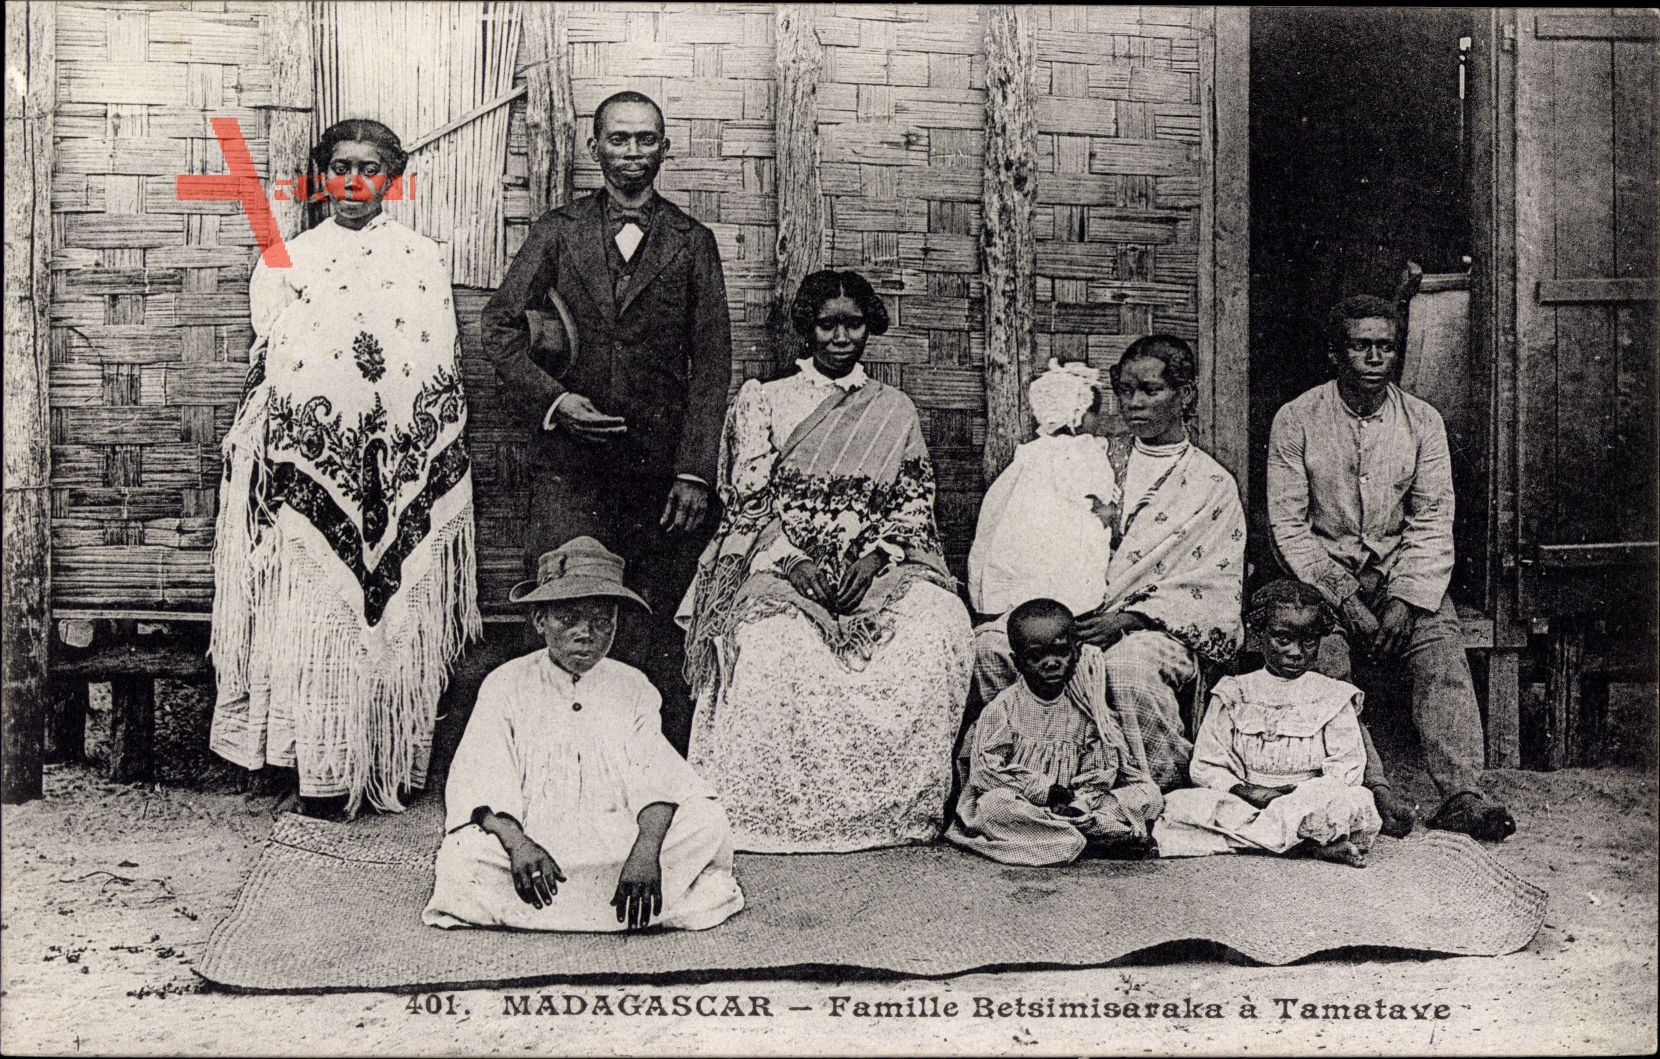 Tamatave Madagaskar, Famille Betsimisaraka, Familienfoto